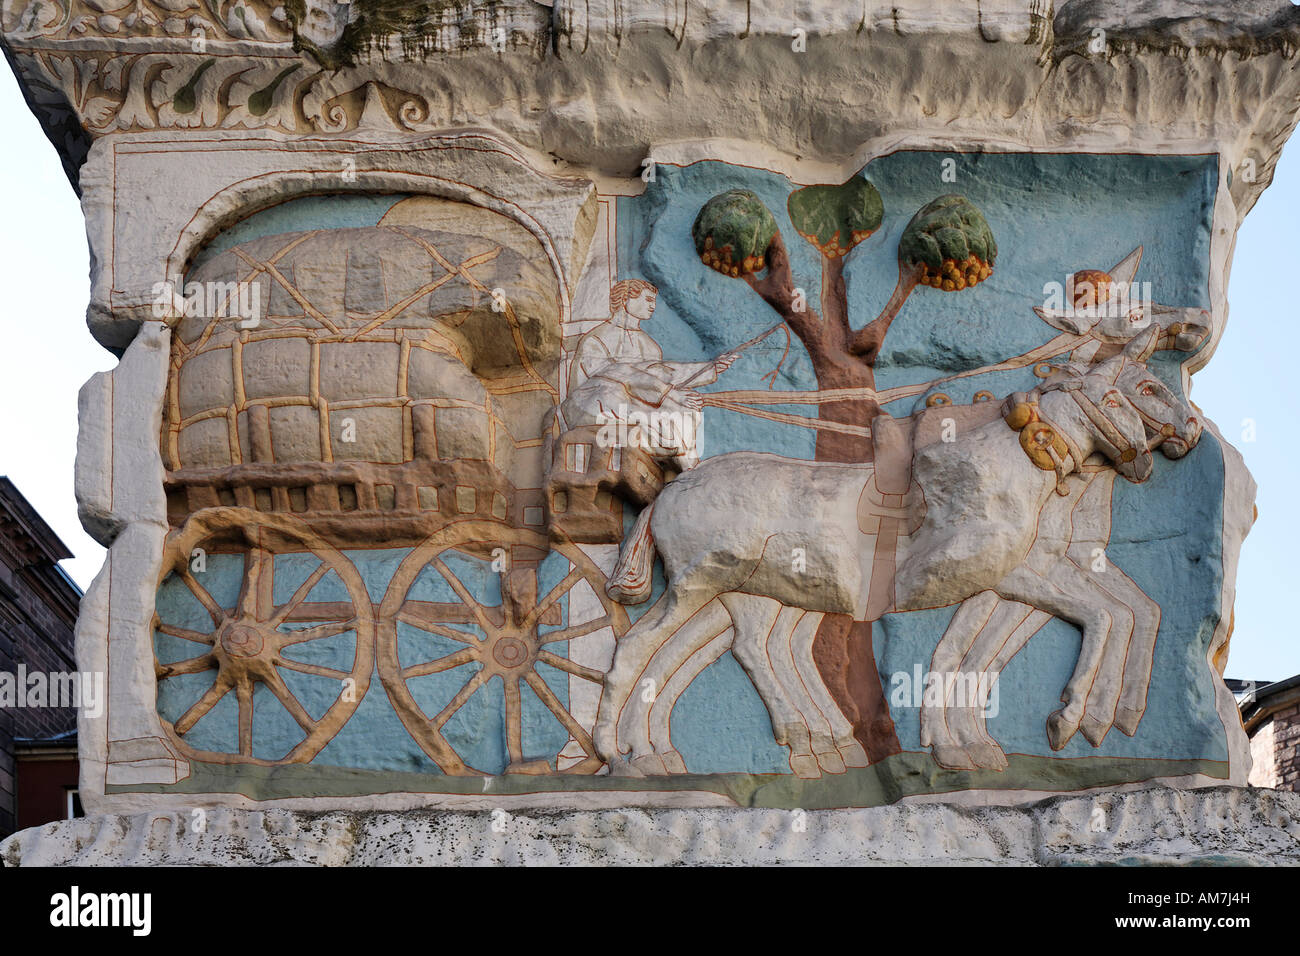 Pferd und Wagen transportieren Stoffballen, römische Grabstätte Igeler-Säule, Landesmuseum Rheinland, Trier, Rheinland-Pfalz, Germa Stockfoto